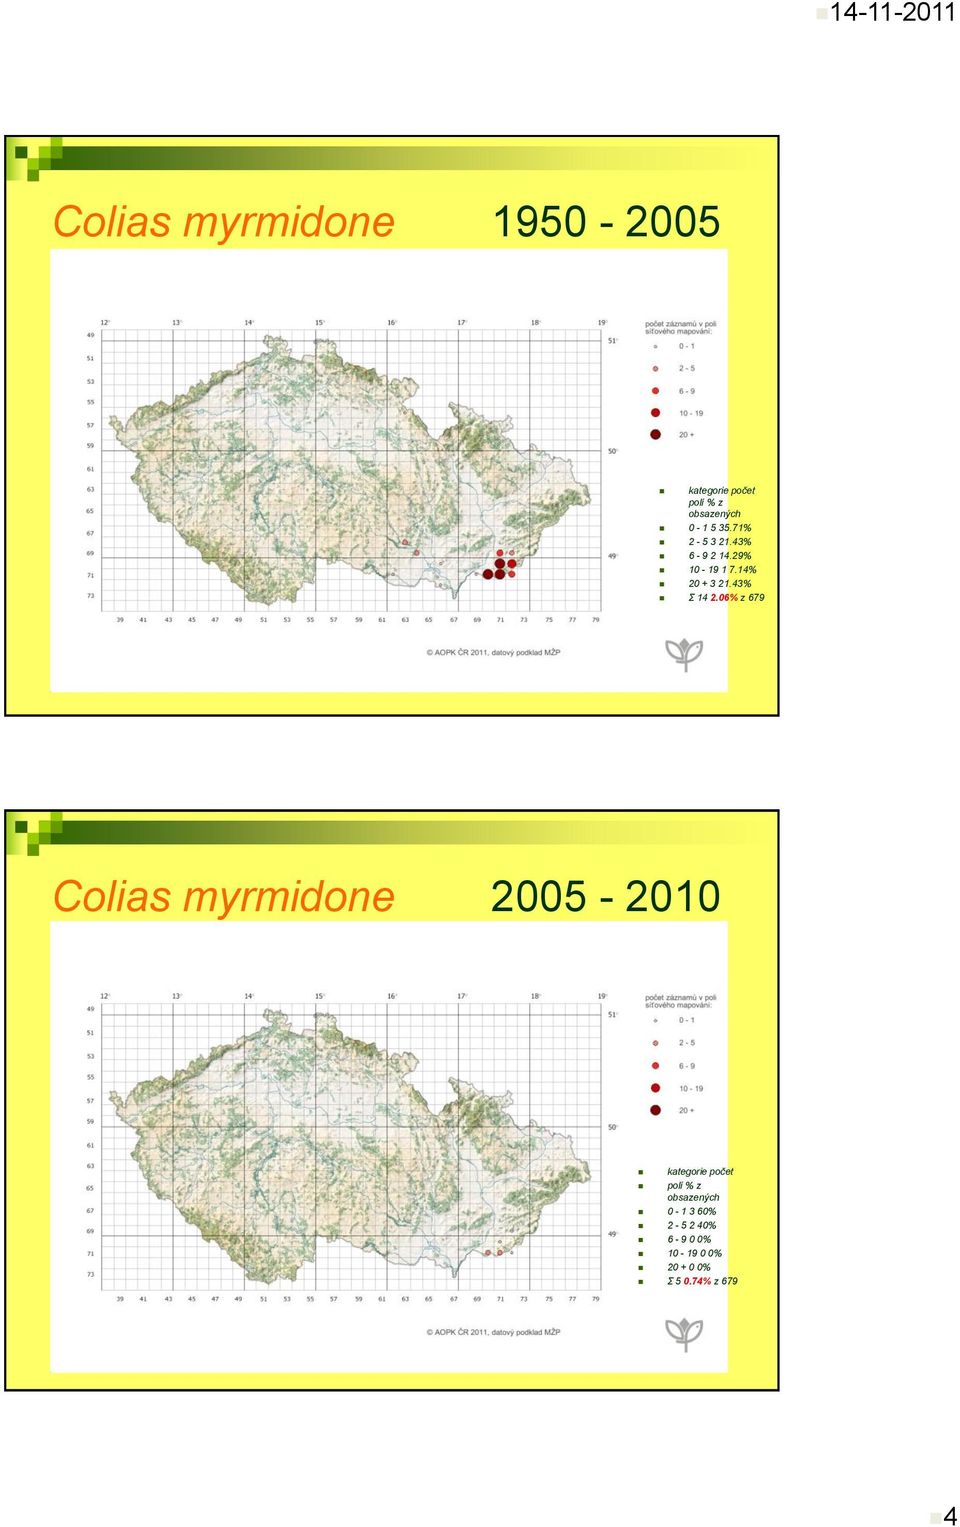 06% z 679 Colias myrmidone 2005-2010 kategorie počet polí % z